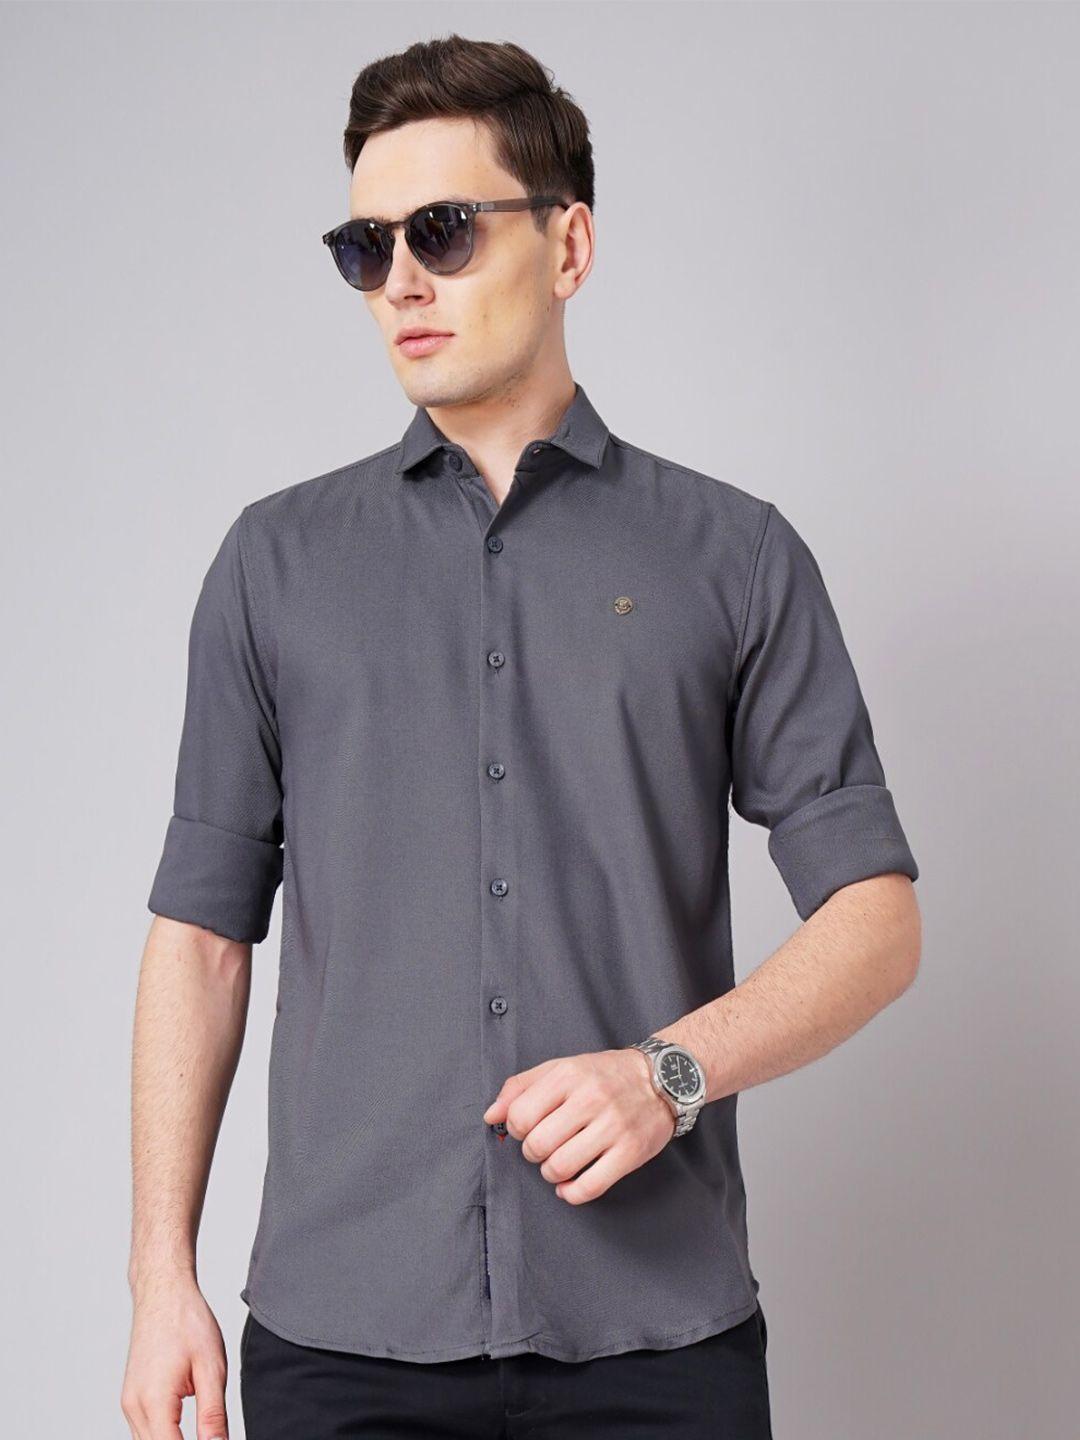 paul street standard slim fit long sleeves casual shirt